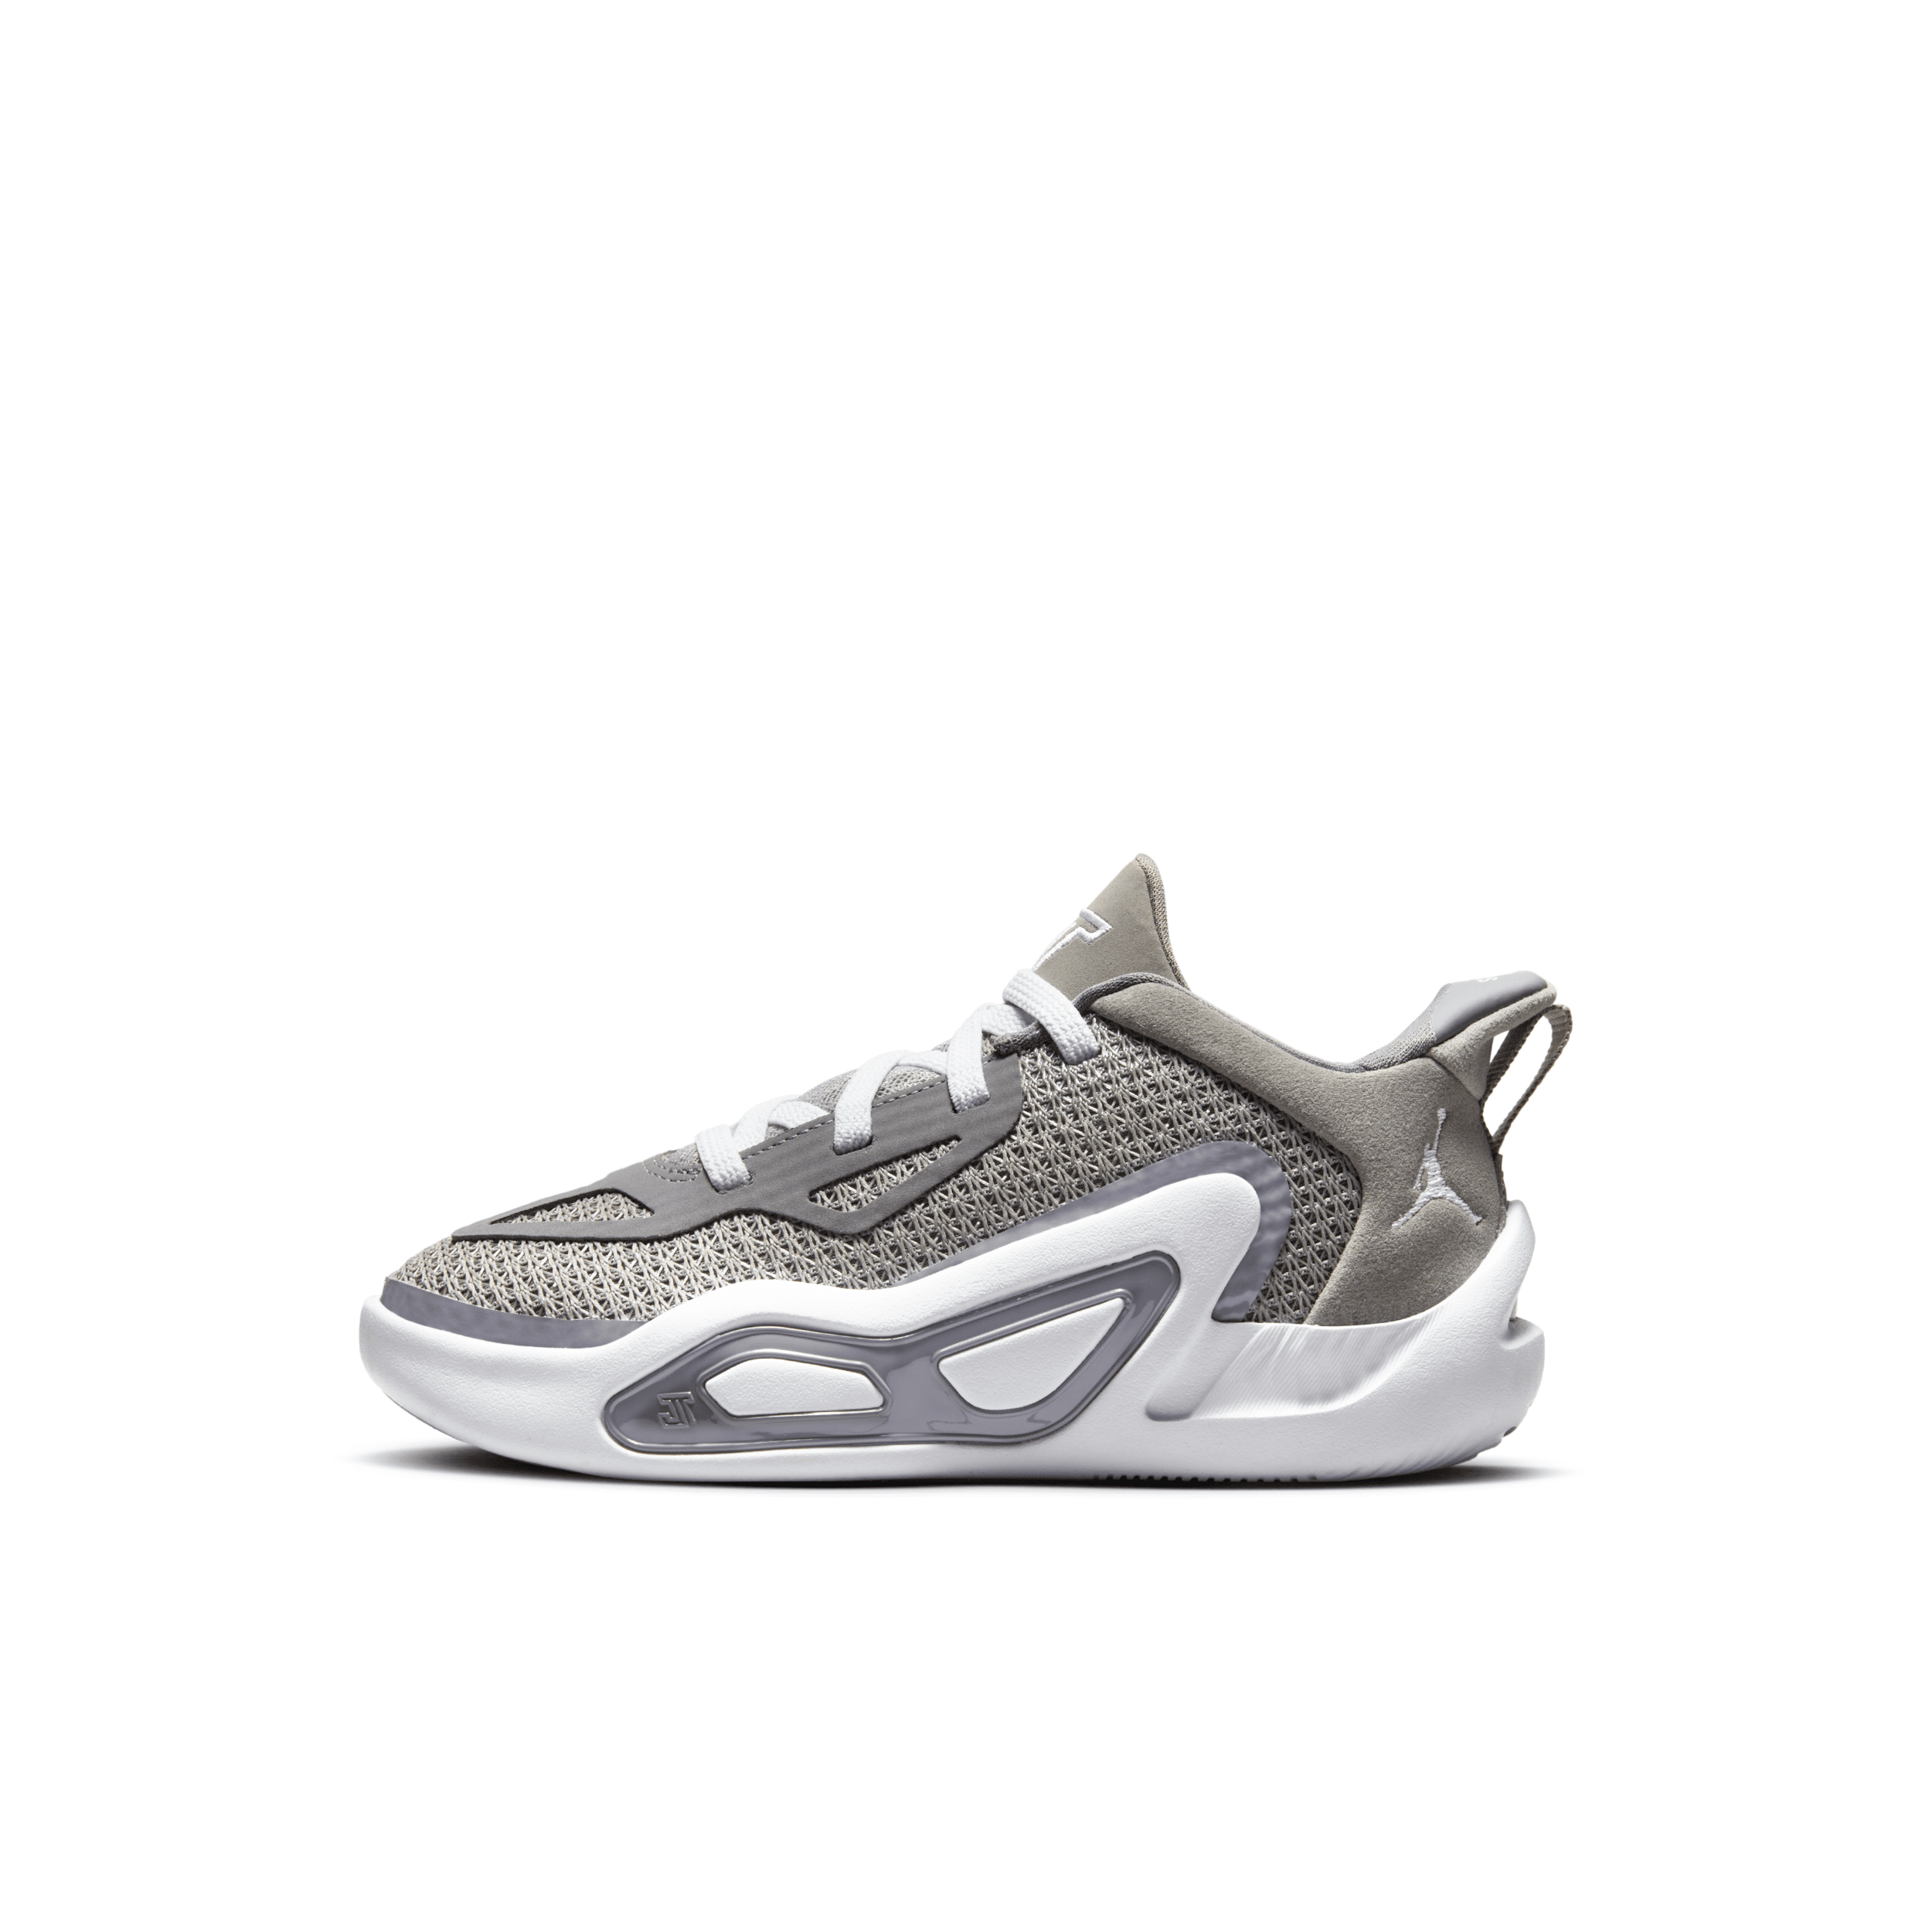 Jordan Babies' Nike Tatum 1 Little Kids' Shoes In Grey